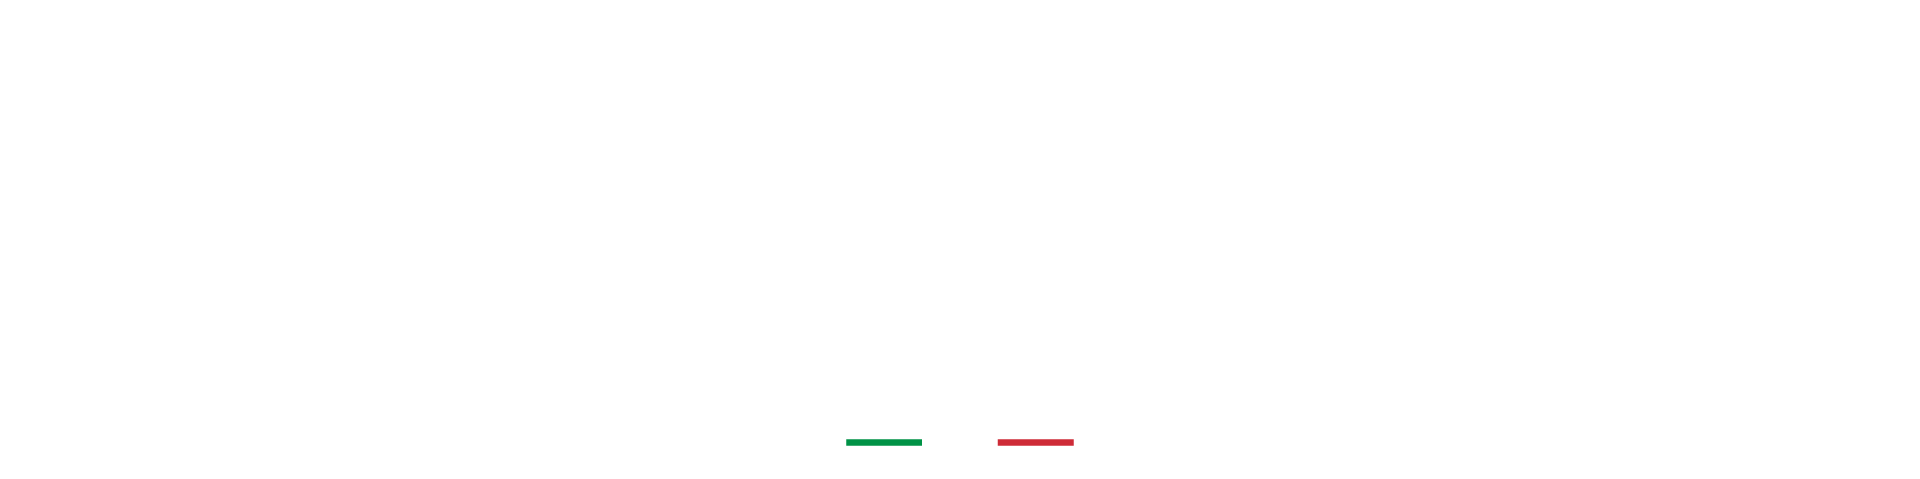 Yumi Beauty Italia